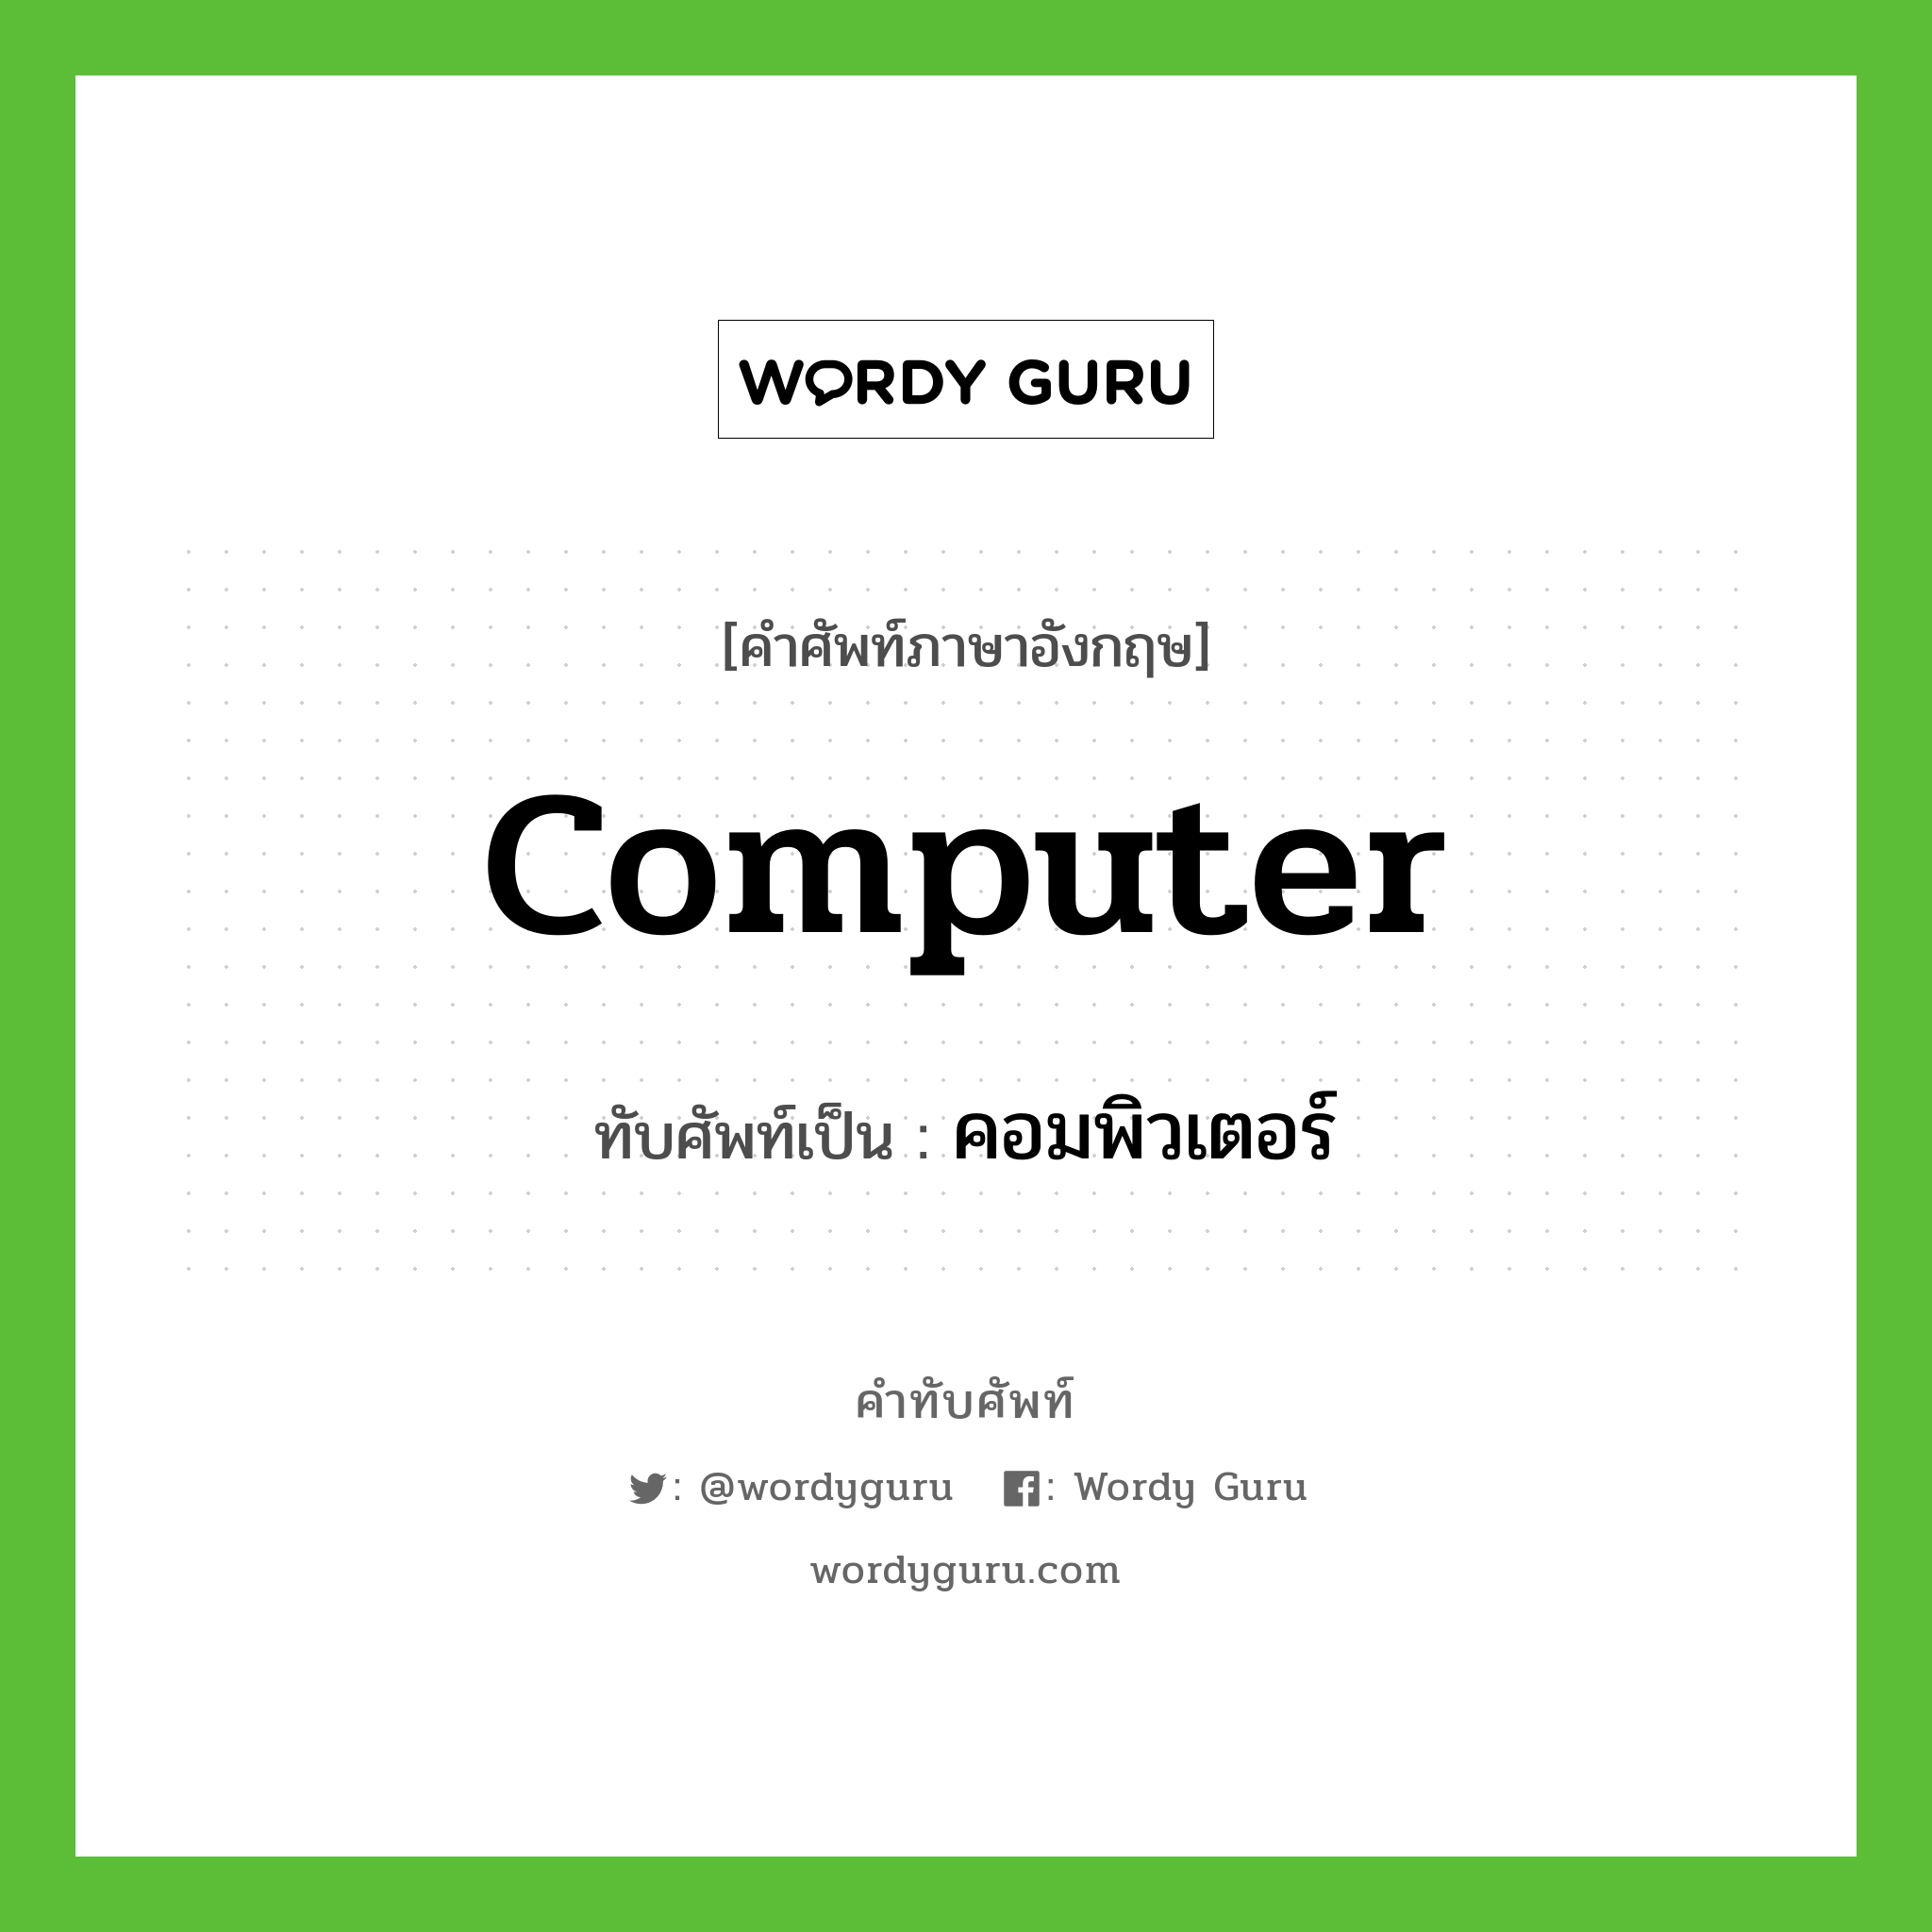 คอมพิวเตอร์ เขียนอย่างไร?, คำศัพท์ภาษาอังกฤษ คอมพิวเตอร์ ทับศัพท์เป็น computer